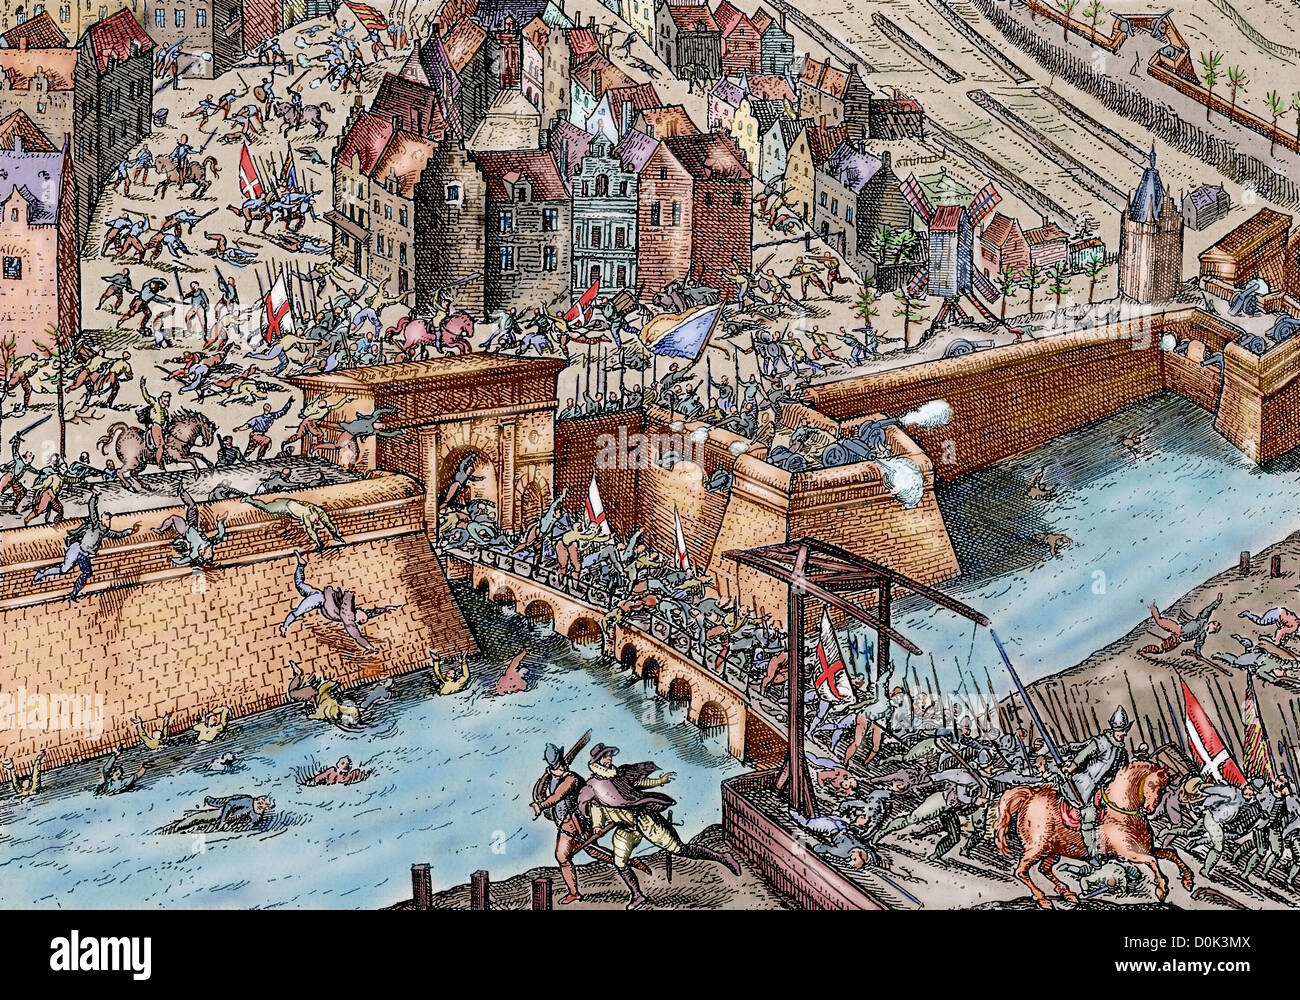 Achtzigjährigen Krieg (1568-1648). Plünderung Antwerpen (4 November 1576) von spanischen Tercios während der Herrschaft von Philipp II. von Spanien. Stockfoto